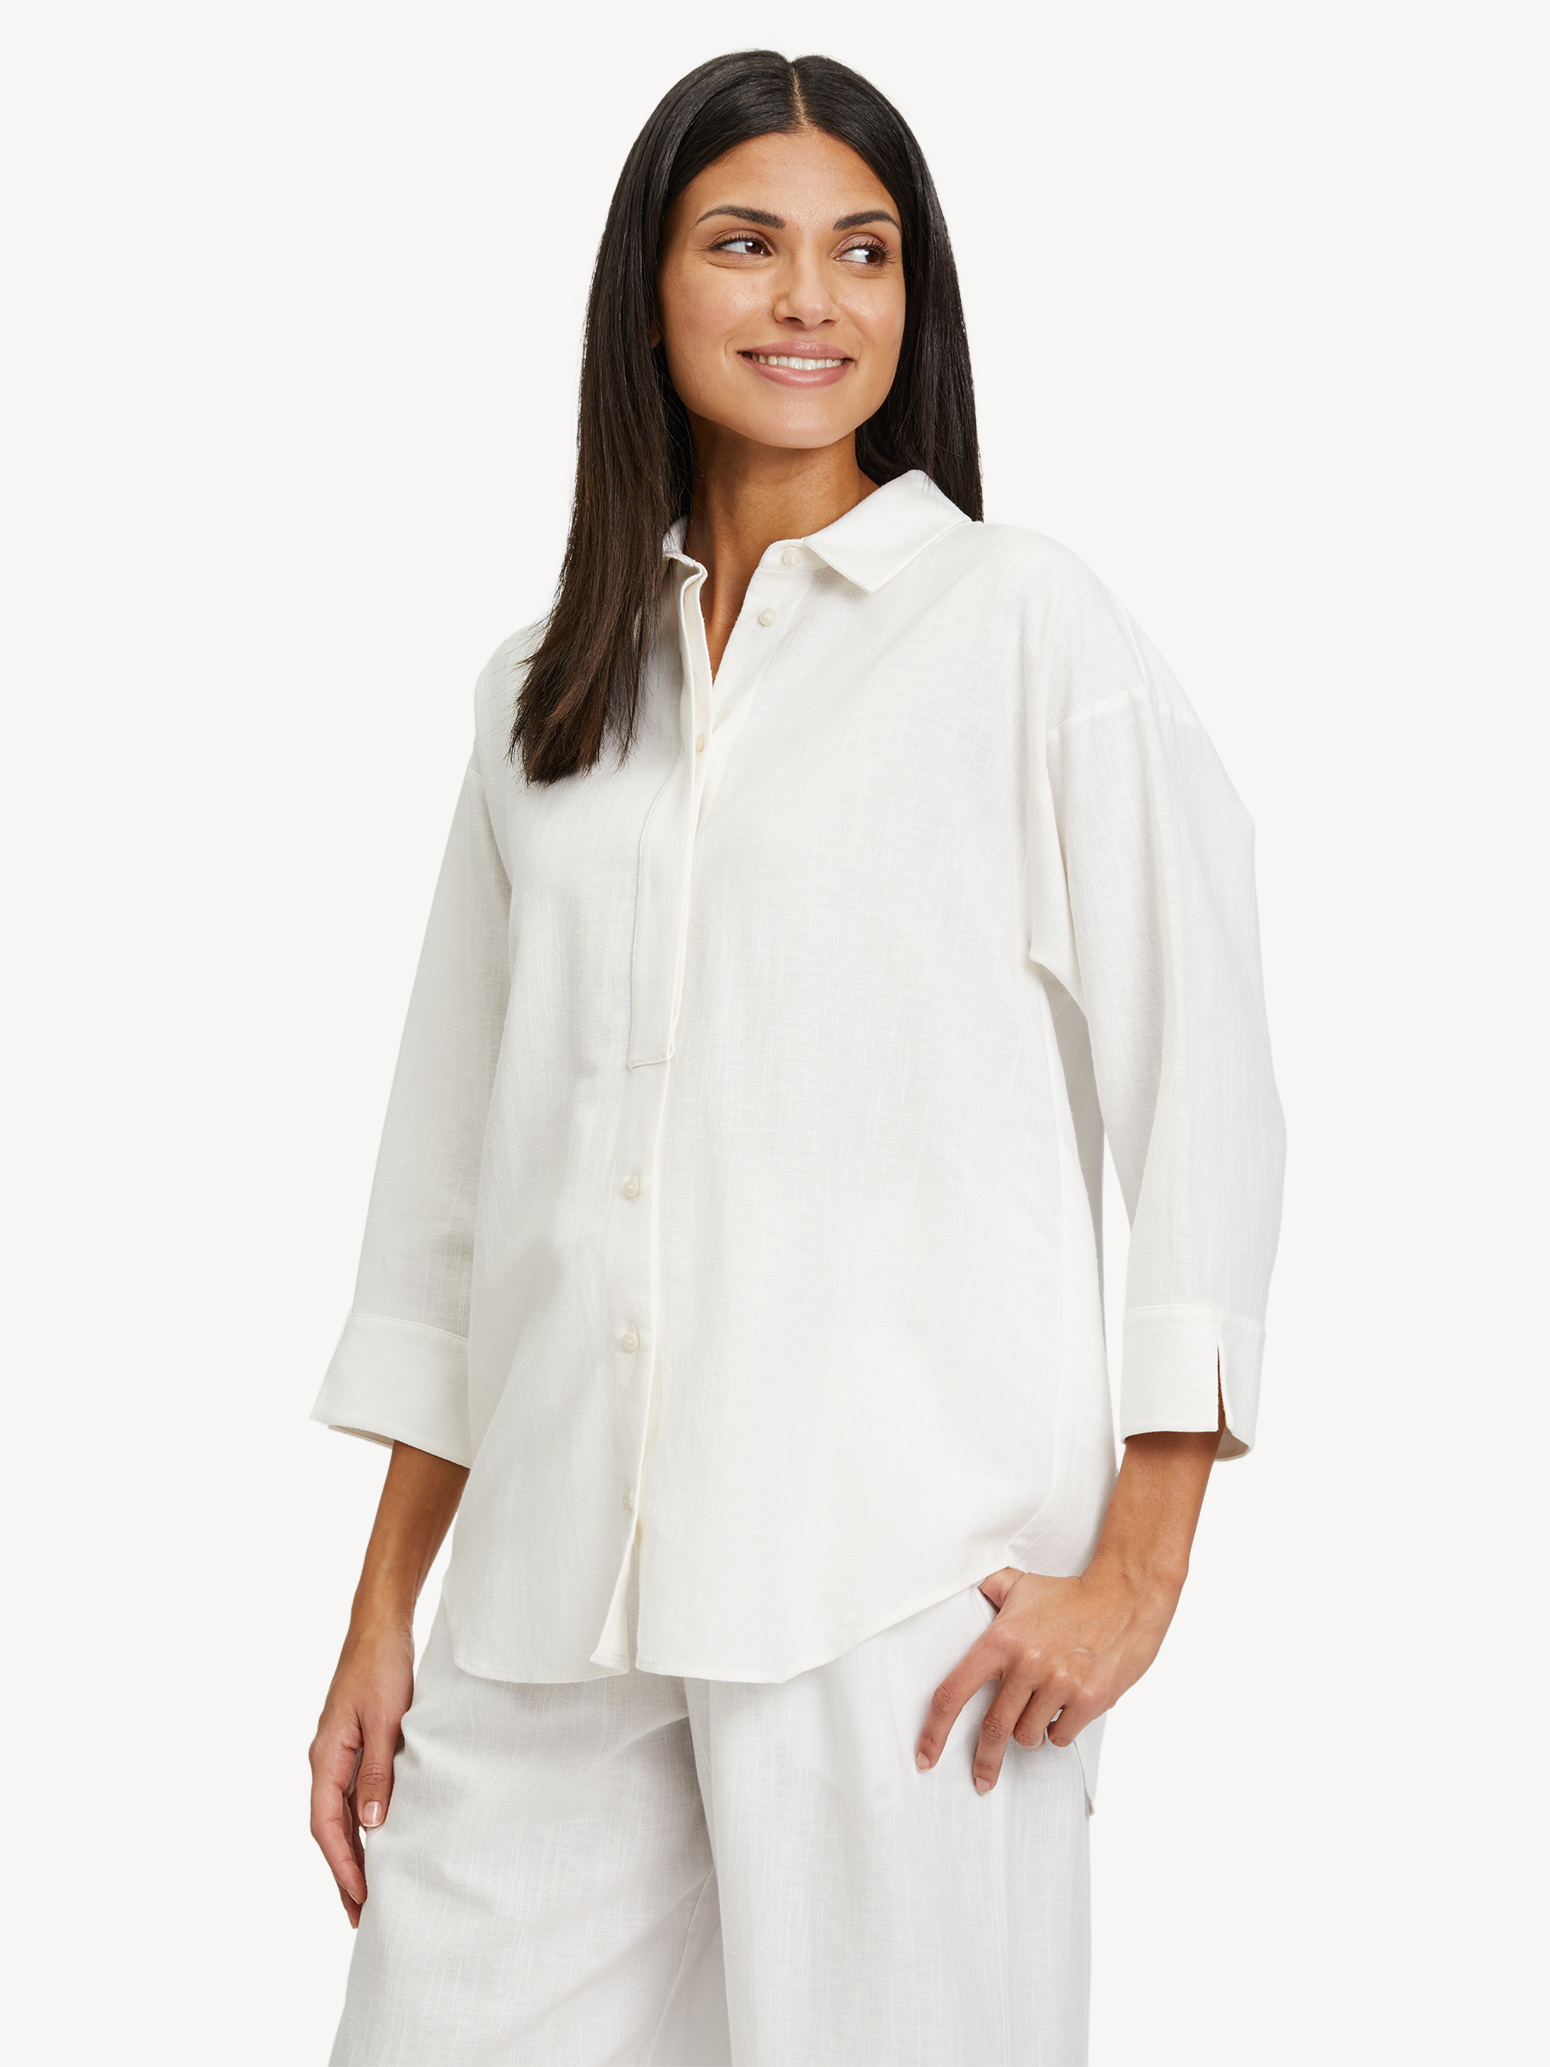 Hemden & Blusen für Damen online kaufen - Tamaris